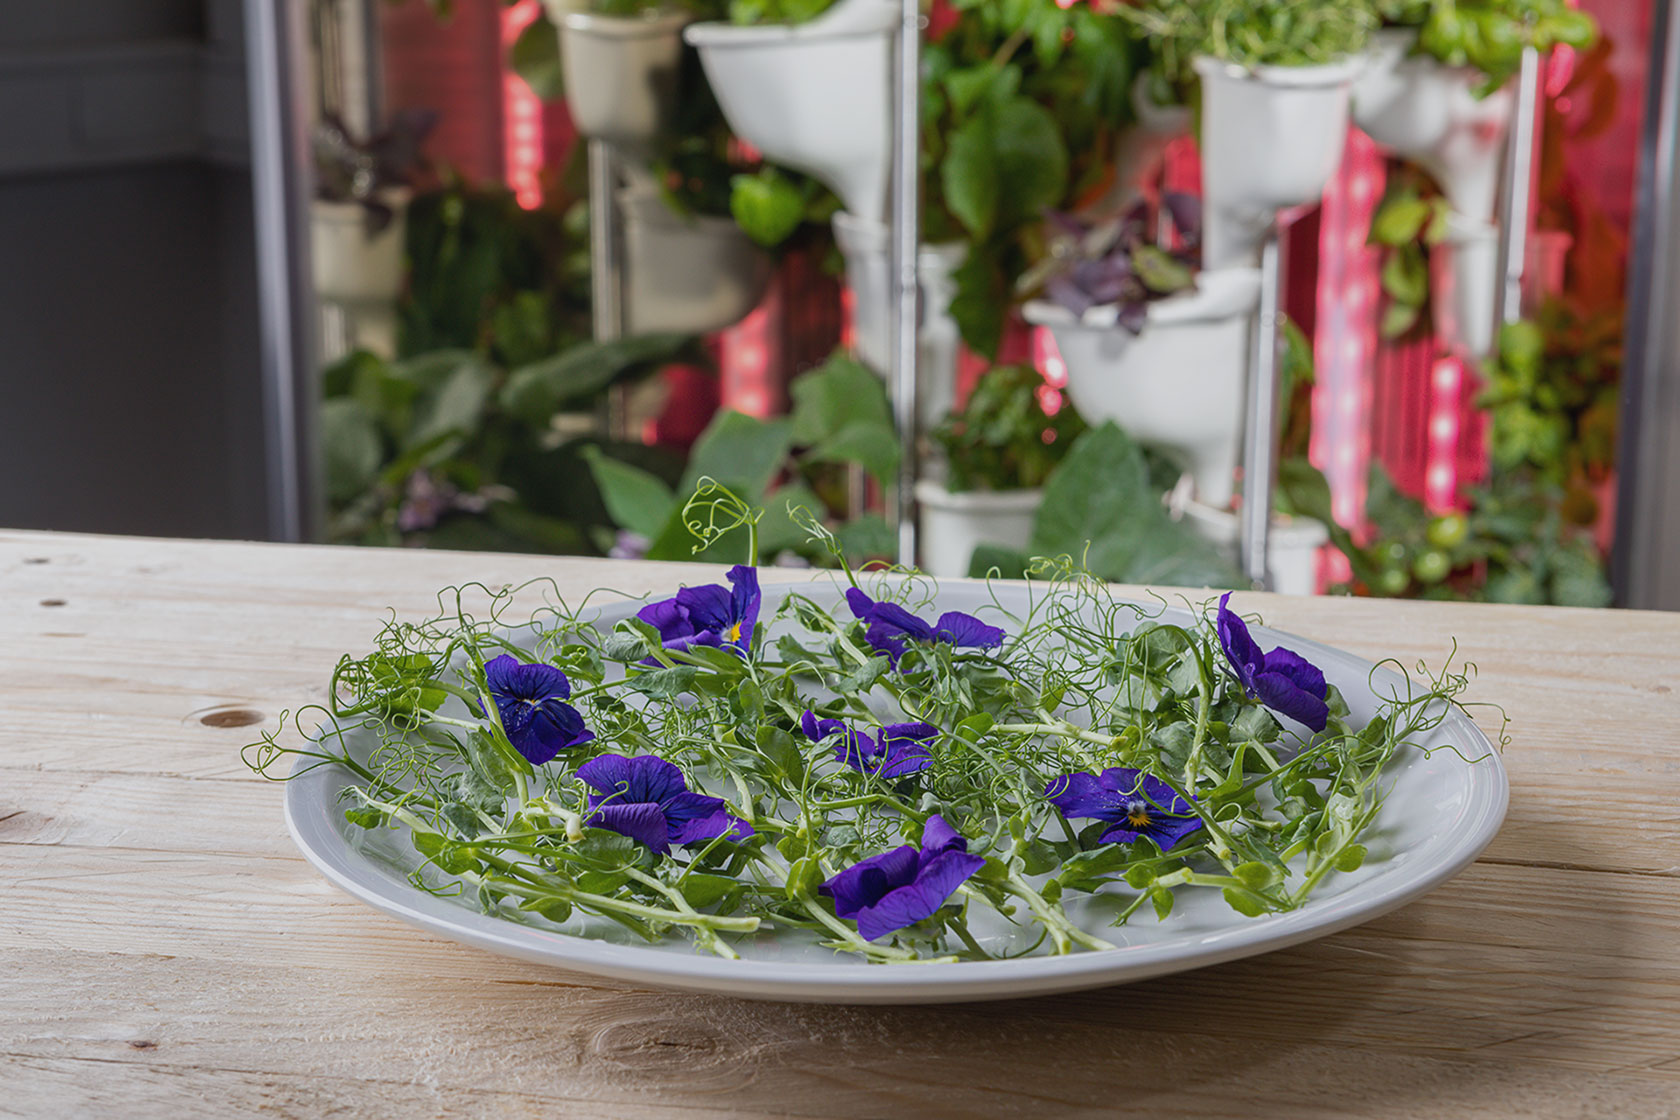 Bạn có thể tự trồng các loại thảo mộc và rau quả ngay trong nhà bếp để phục vụ cho bữa ăn tươi ngon tại chỗ.